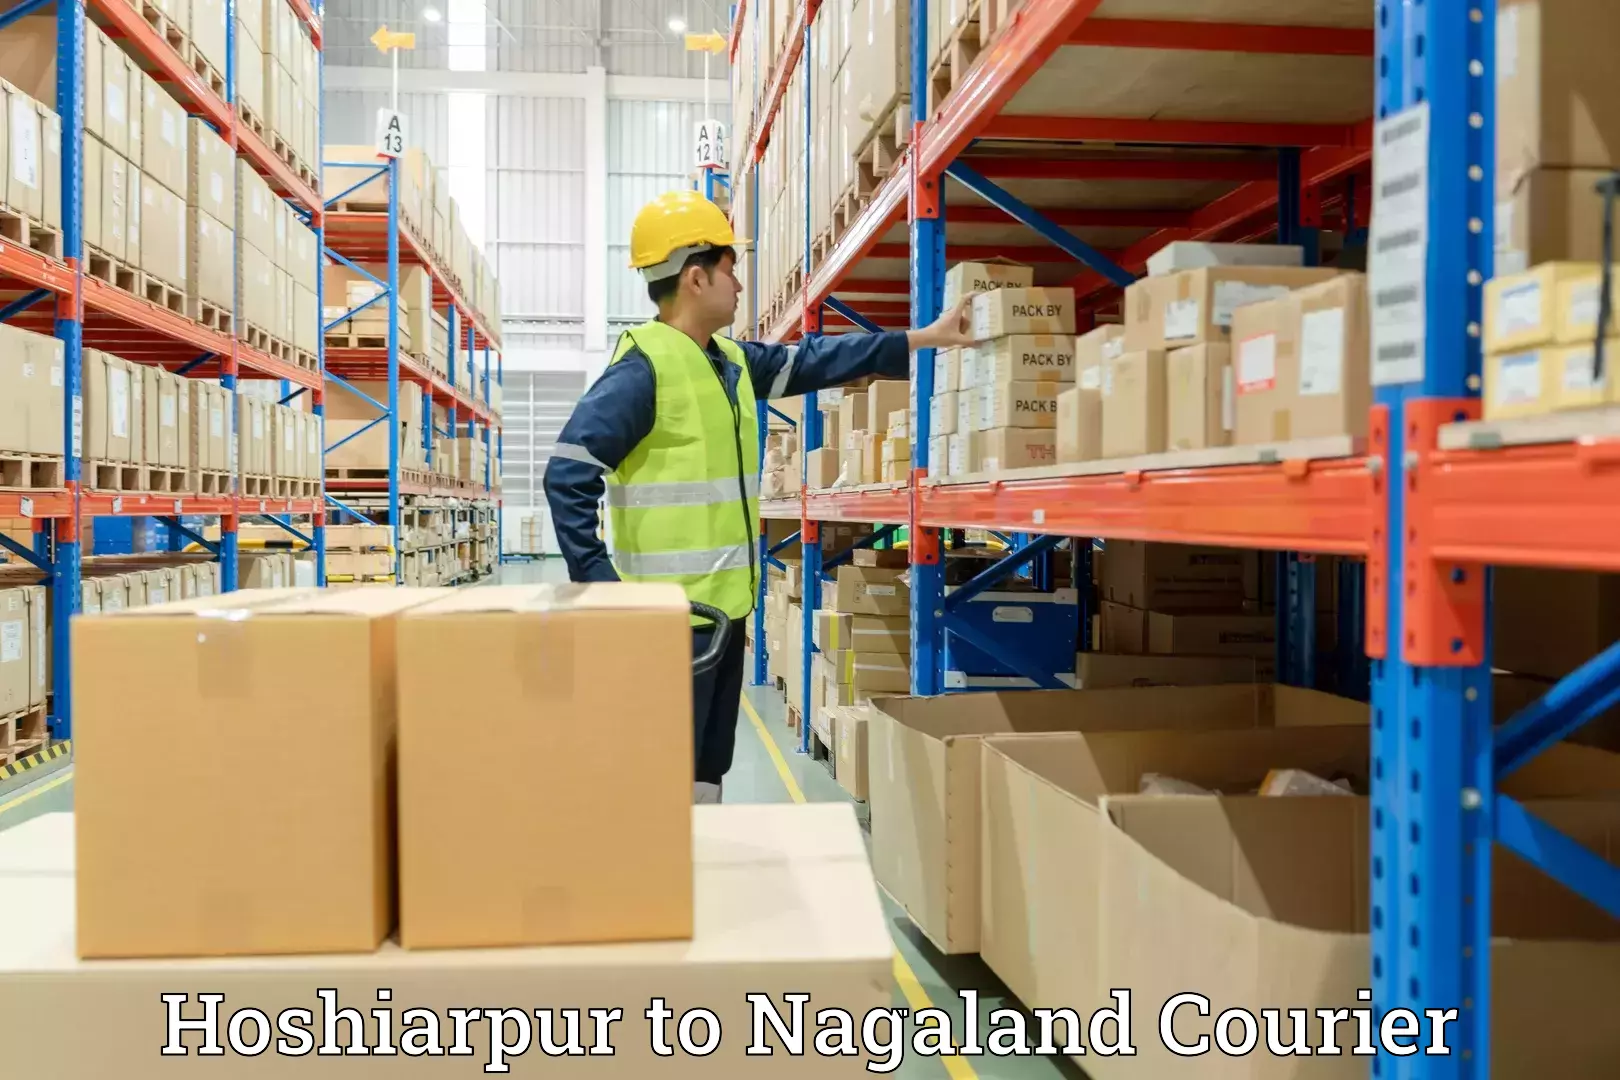 Full-service movers Hoshiarpur to Nagaland